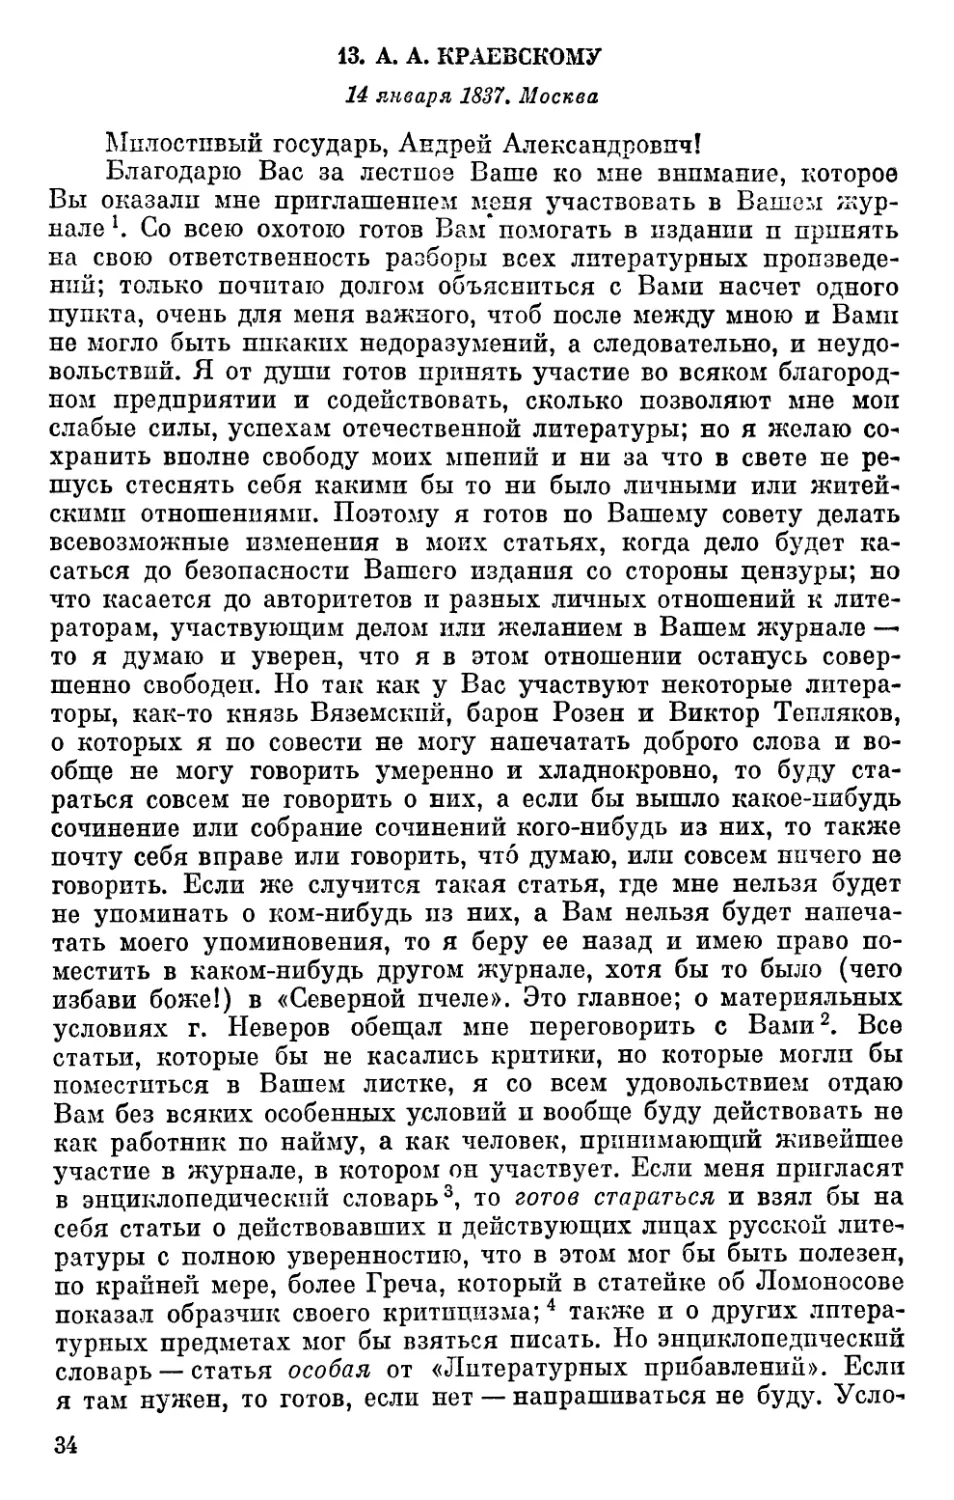 13. А. А. Краевскому. 14 января 1837